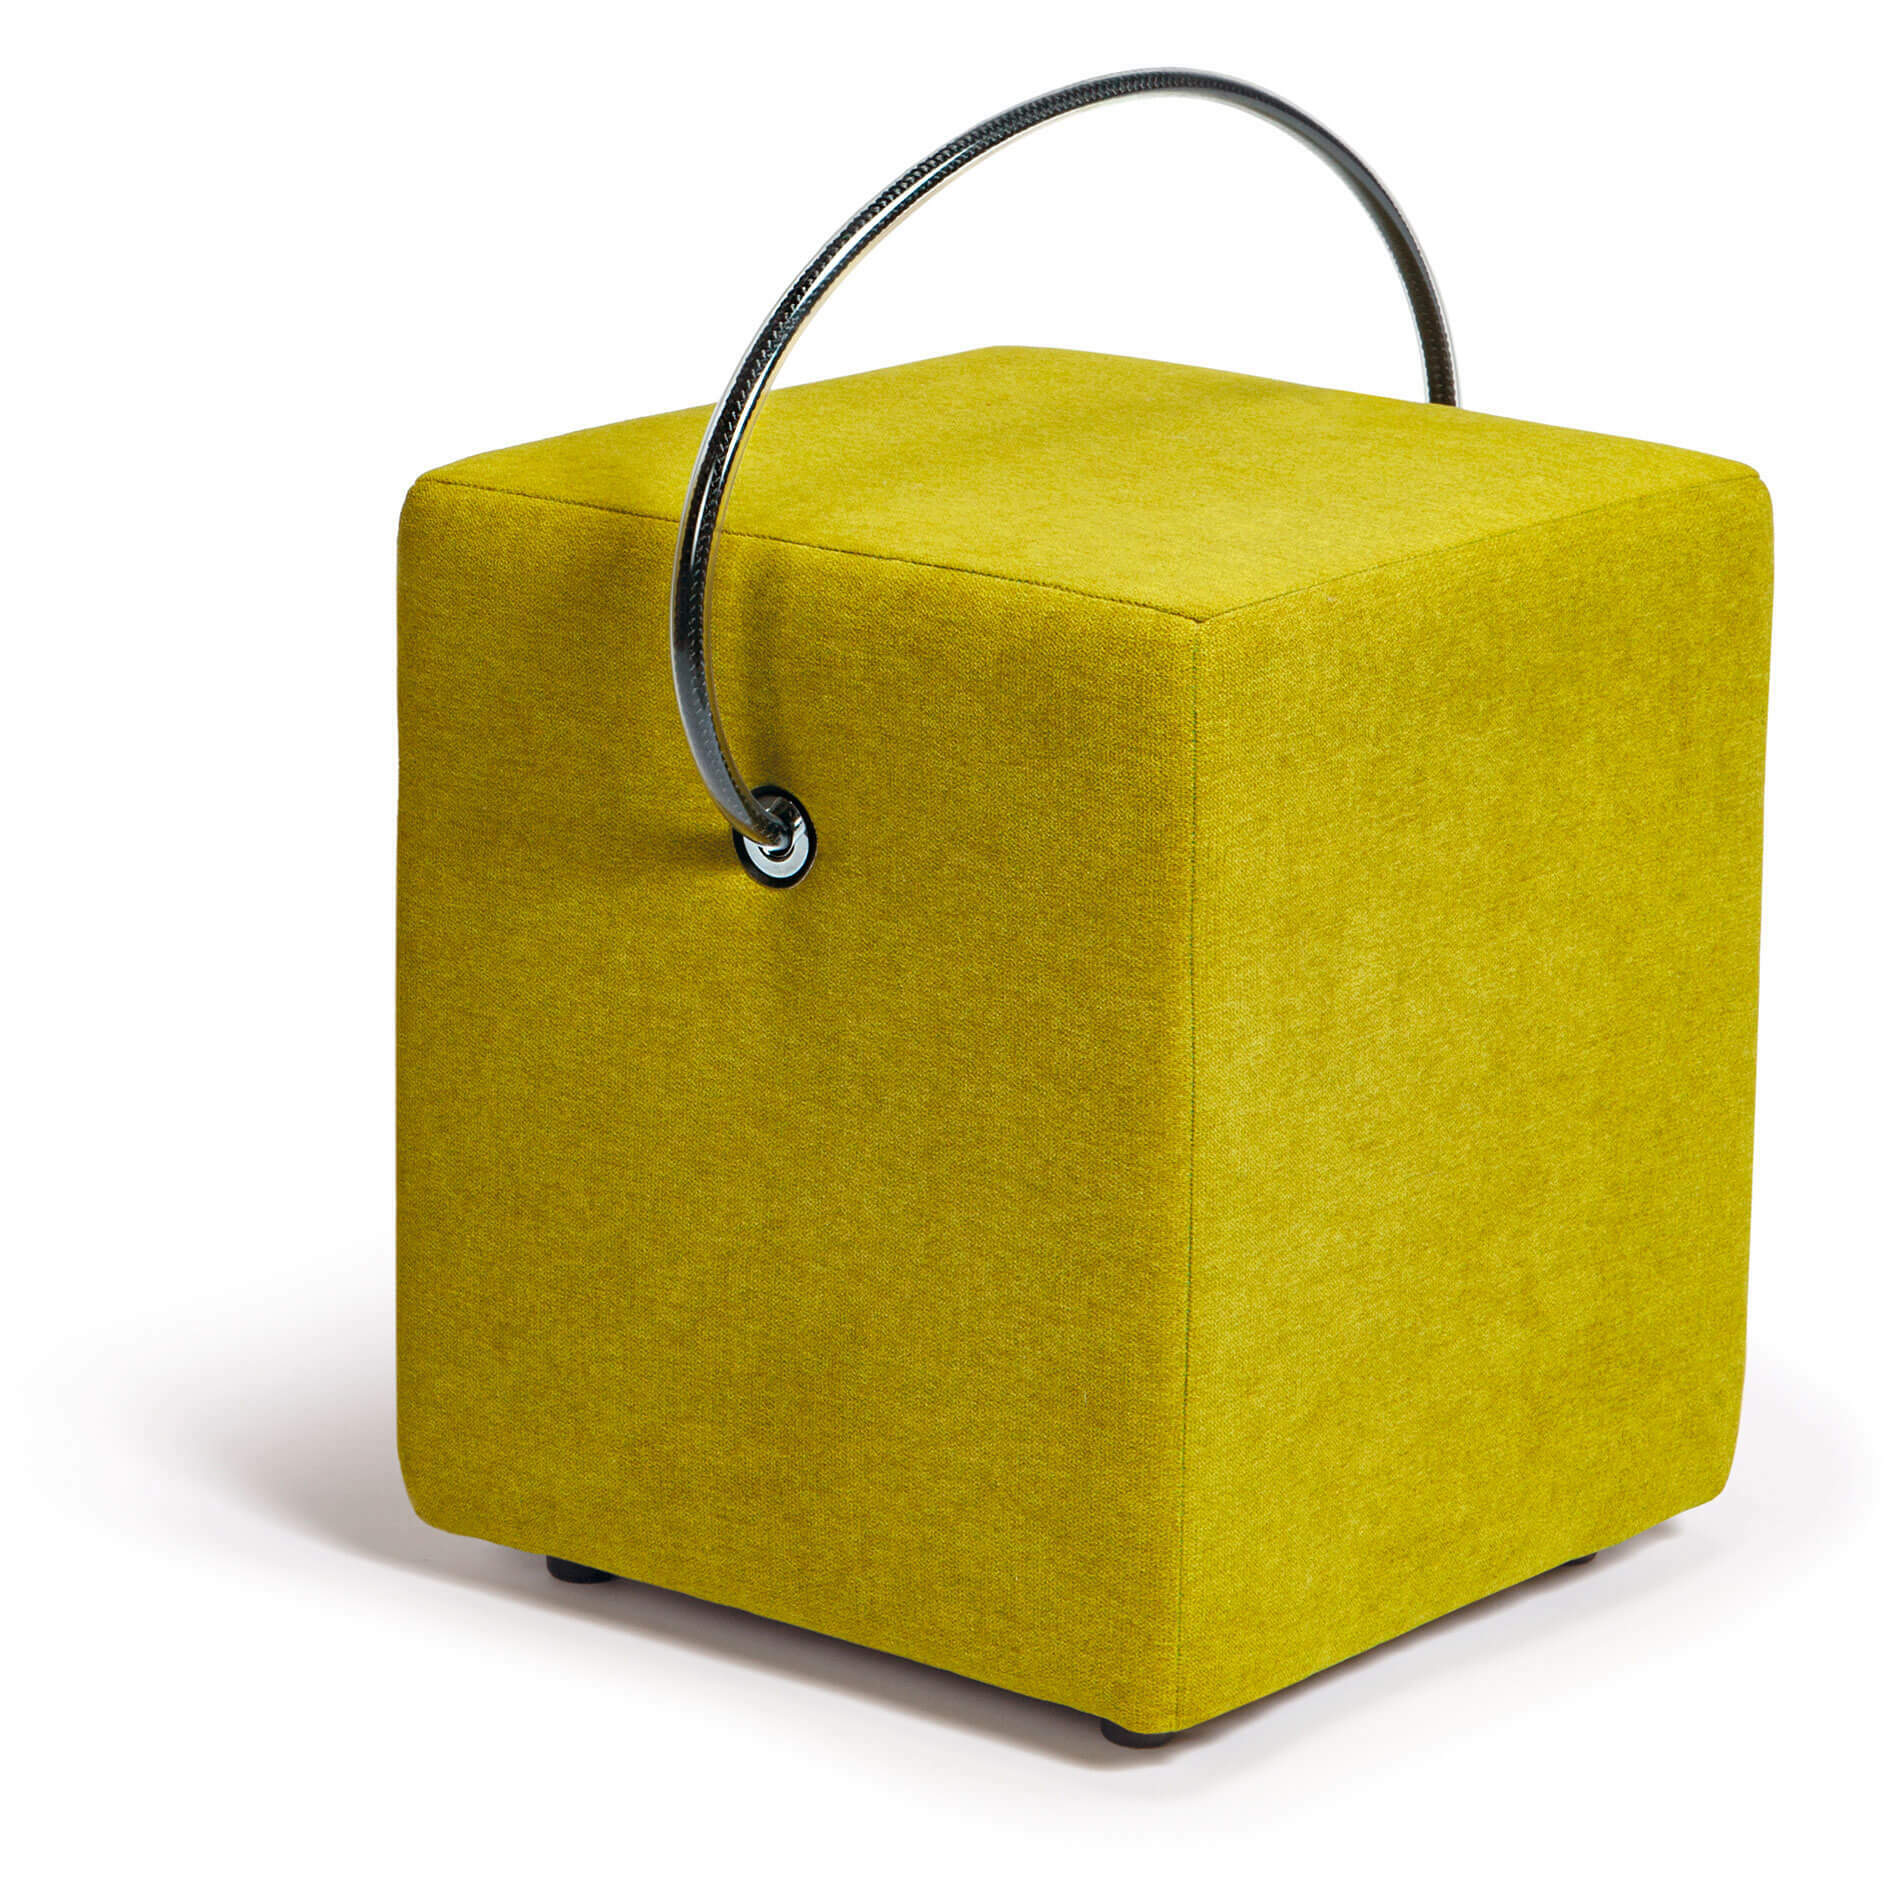 Grüner Design-Sitzwürfel: Entdecken Sie die Natur mit unserem handgefertigten, gepolsterten und tragbaren grünen Sitzwürfel. Jetzt bestellen!